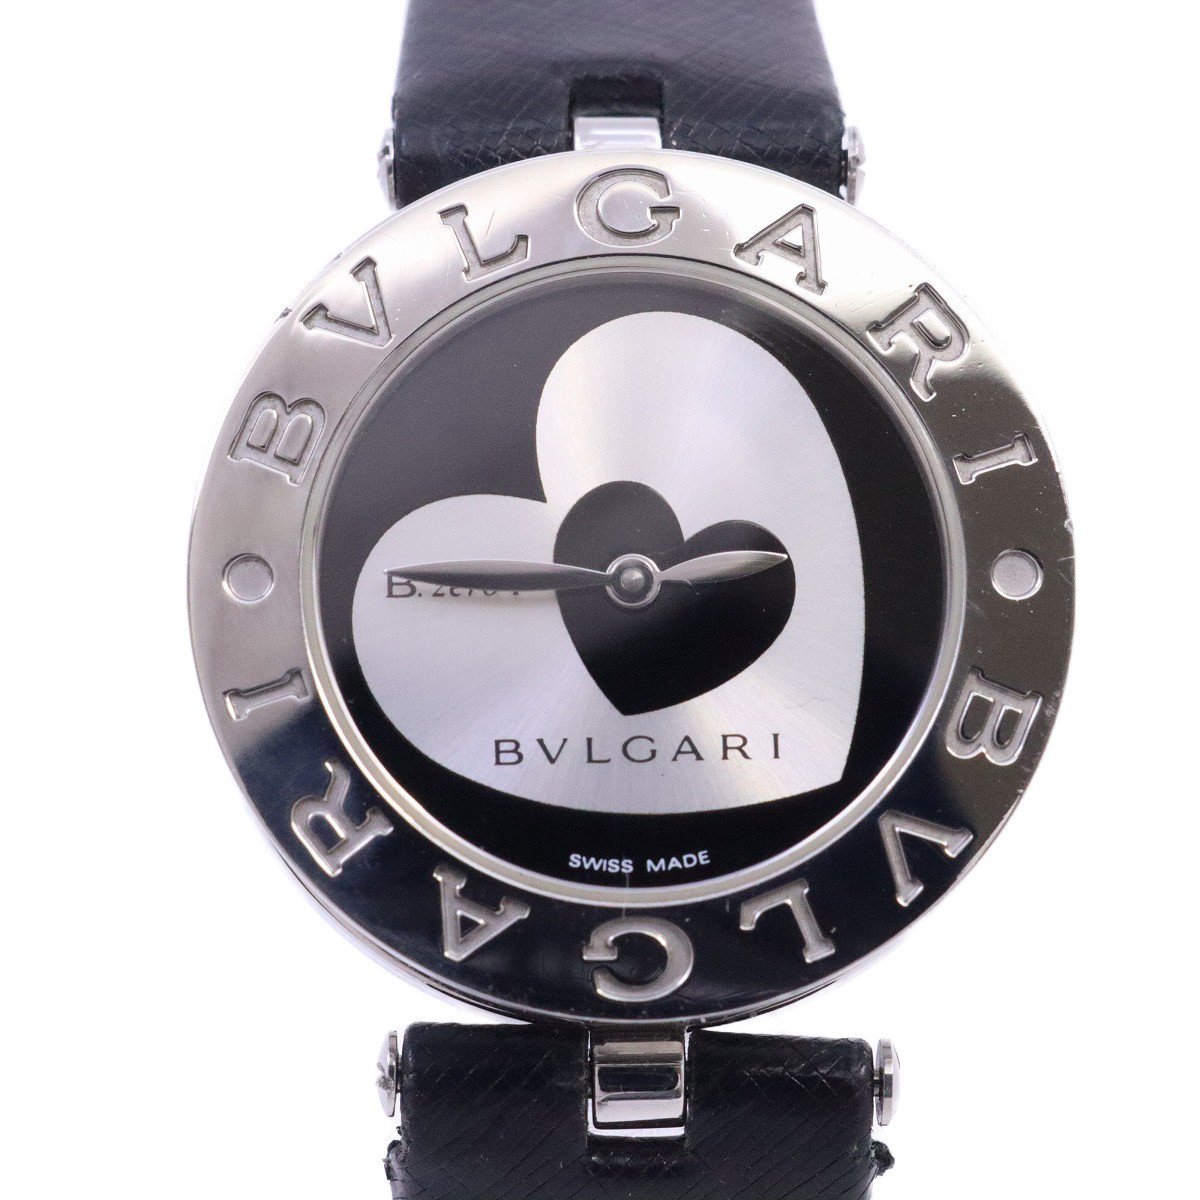 ブルガリ B-zero1 クォーツ レディース 腕時計 ダブルハート文字盤 純正革ベルト BZ30S【いおき質店】の画像1